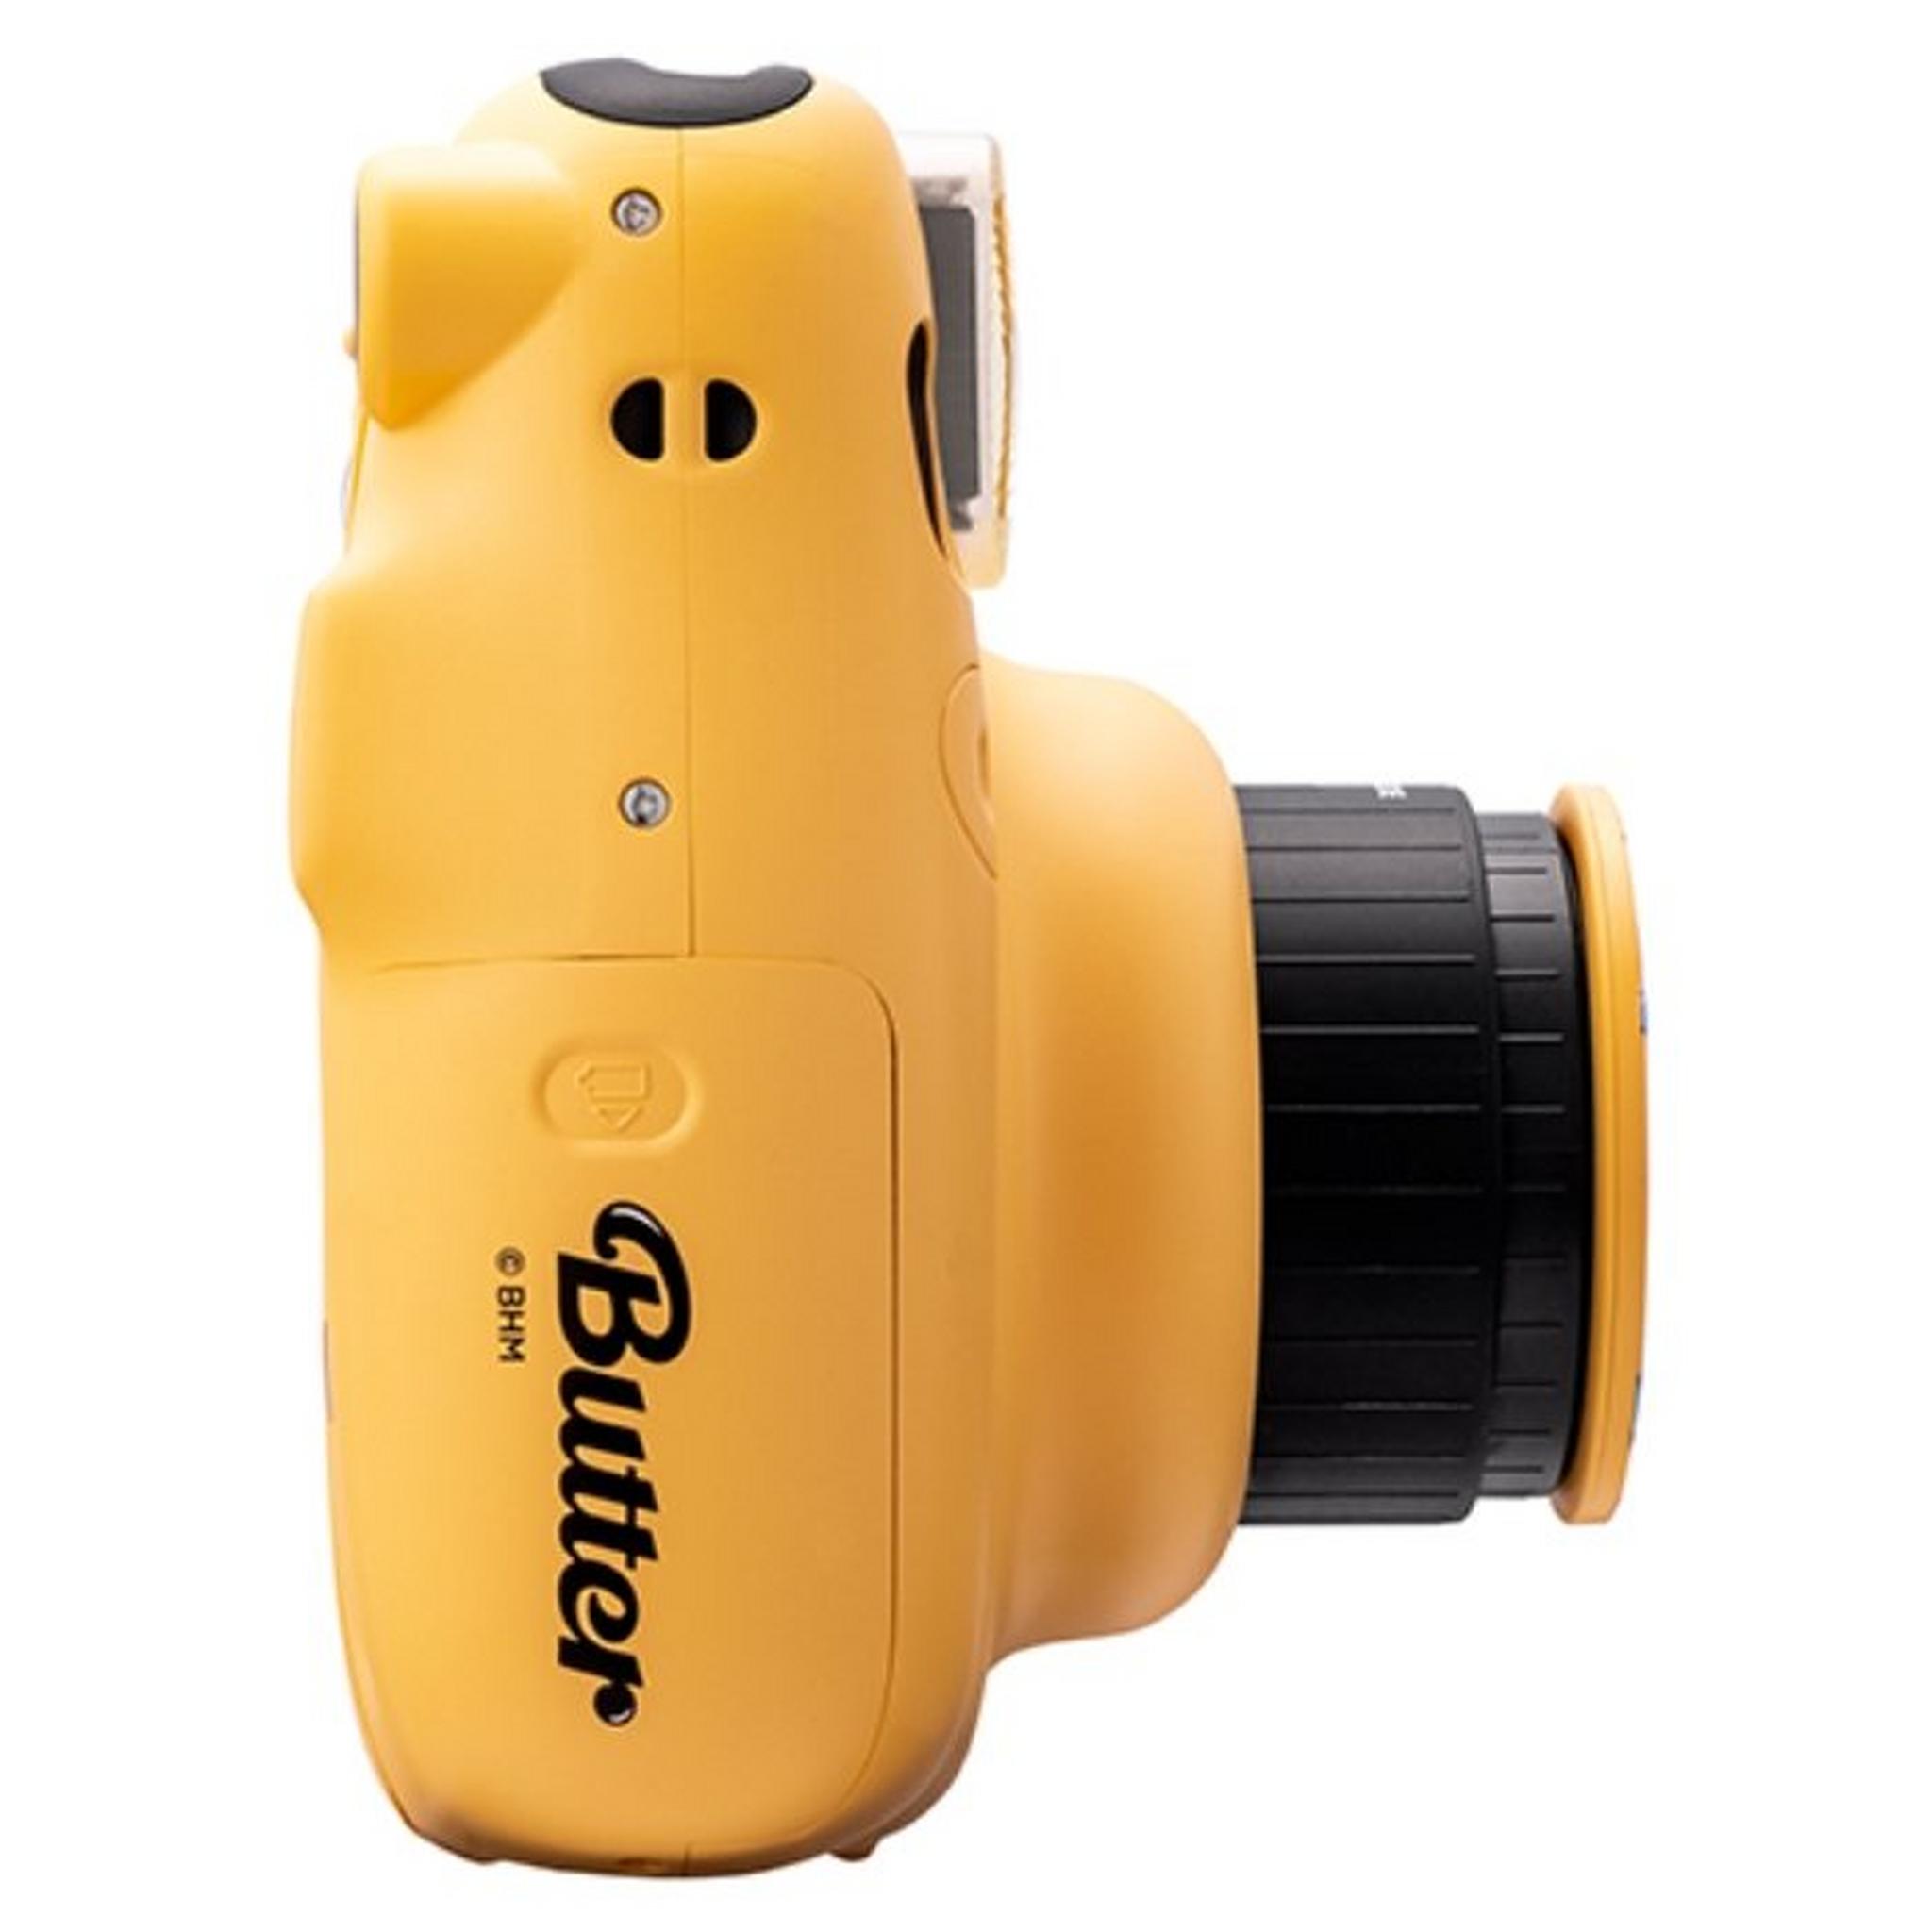 كاميرا فوجي فيلم إنستاكس ميني 11 الفورية - أصفر أصدار بي تي اس